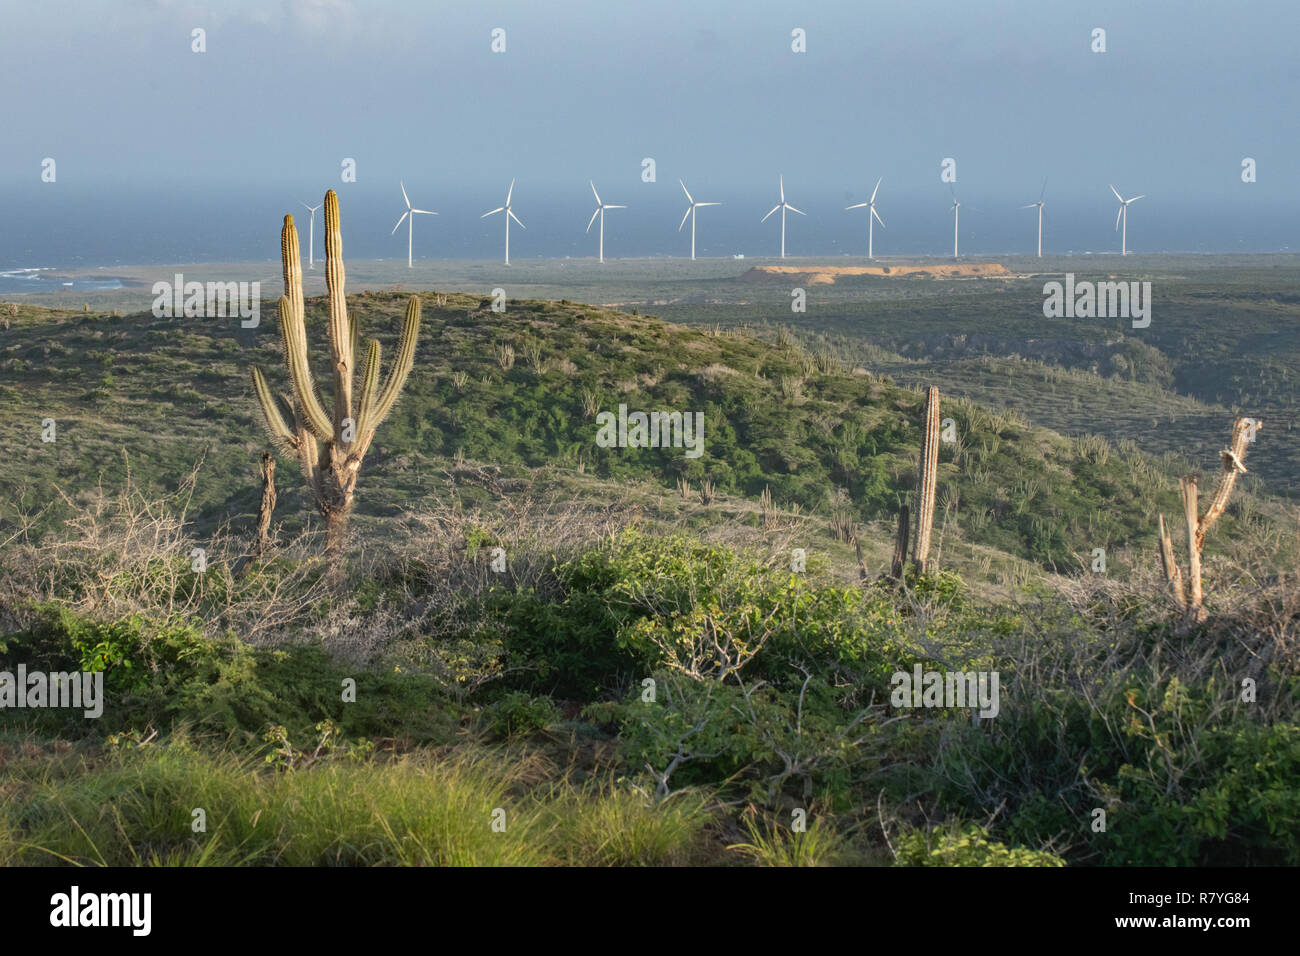 Windmill farm Aruba dans le Parc national Arikok - effort de durabilité de l'énergie éolienne, éoliennes sous forme d'une ferme éolienne d'accroître l'énergie renouvelable Banque D'Images